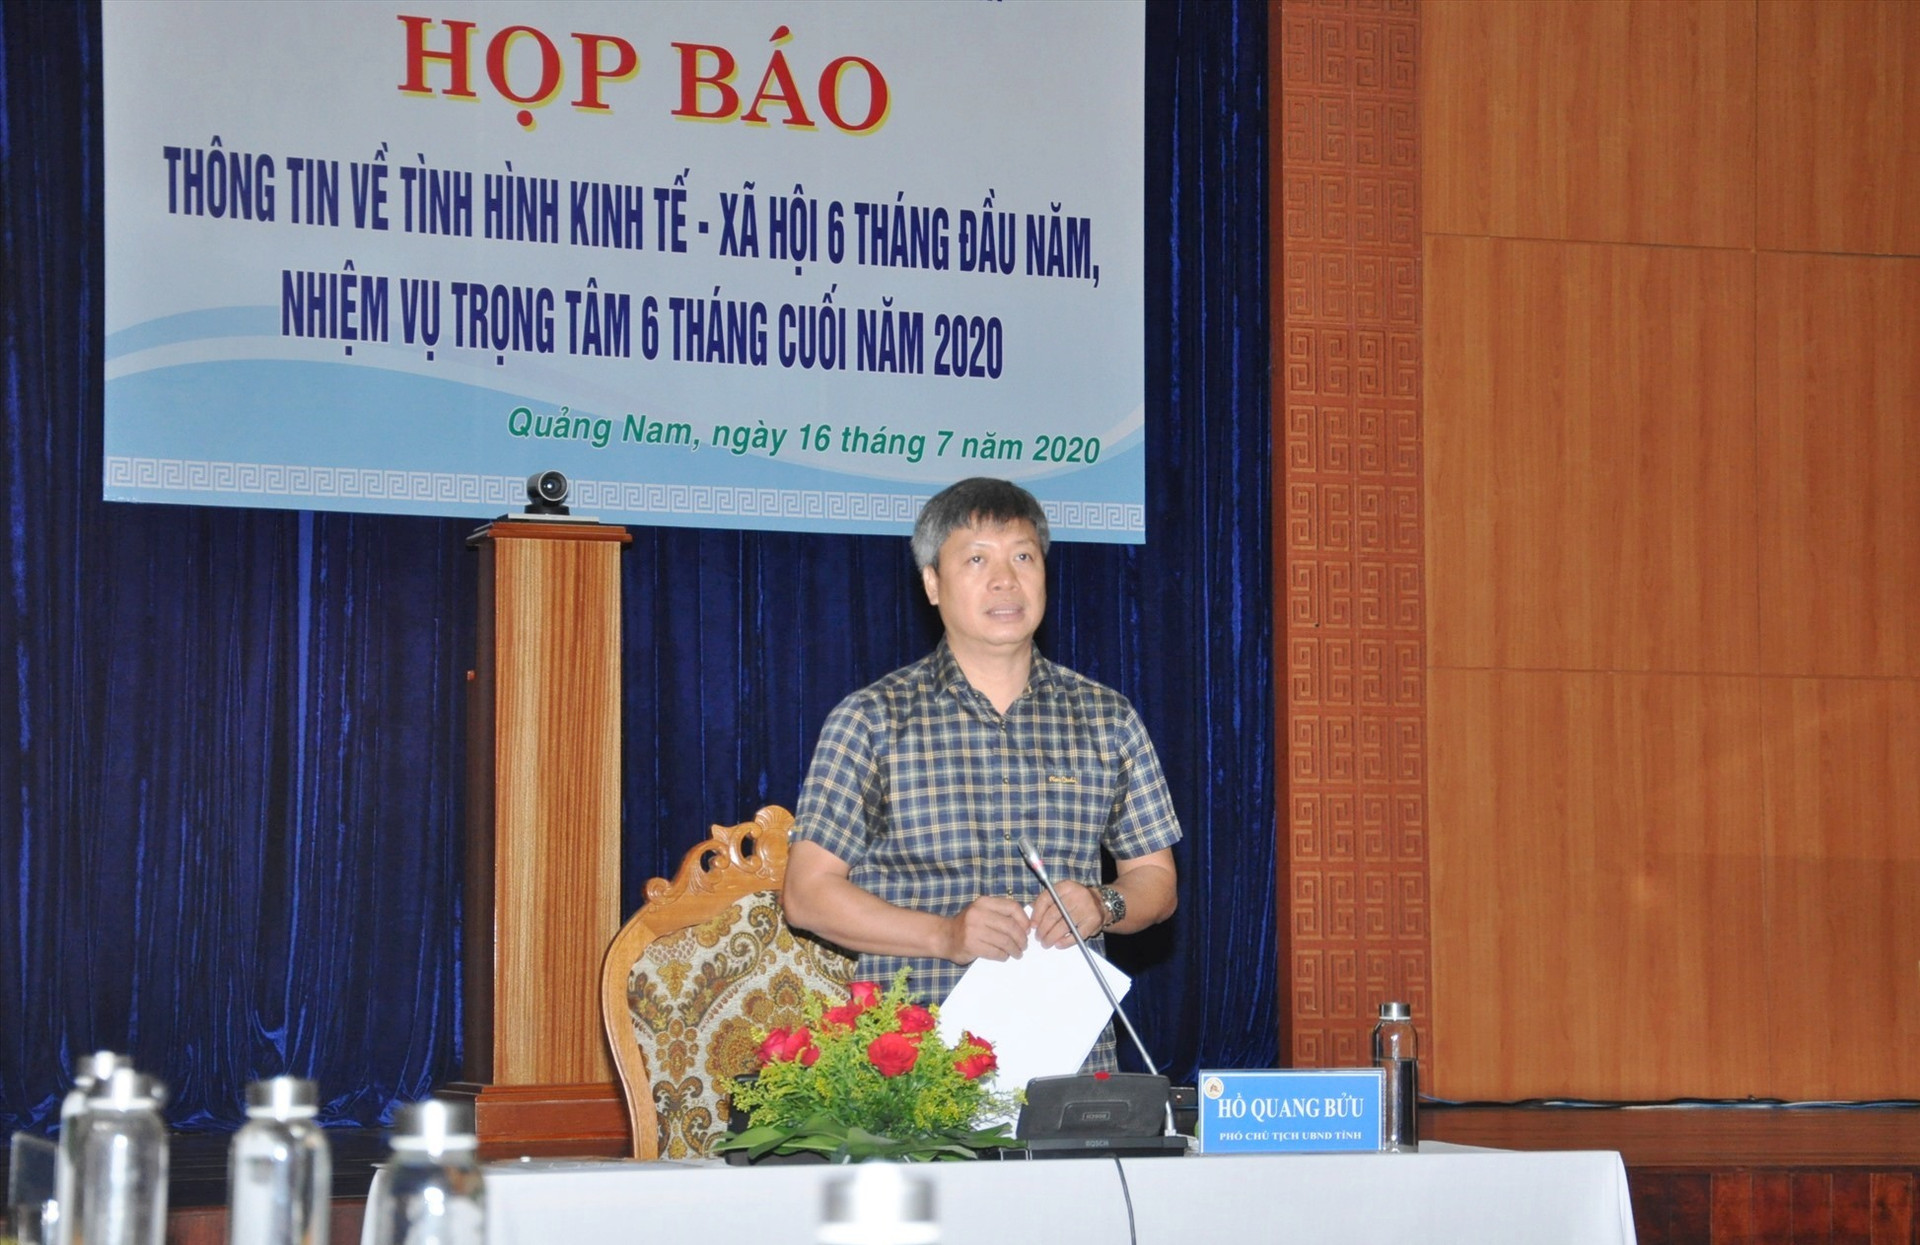 Phó Chủ tịch UBND tỉnh Hồ Quang Bửu chủ trì buổi họp báo. Ảnh:X.P